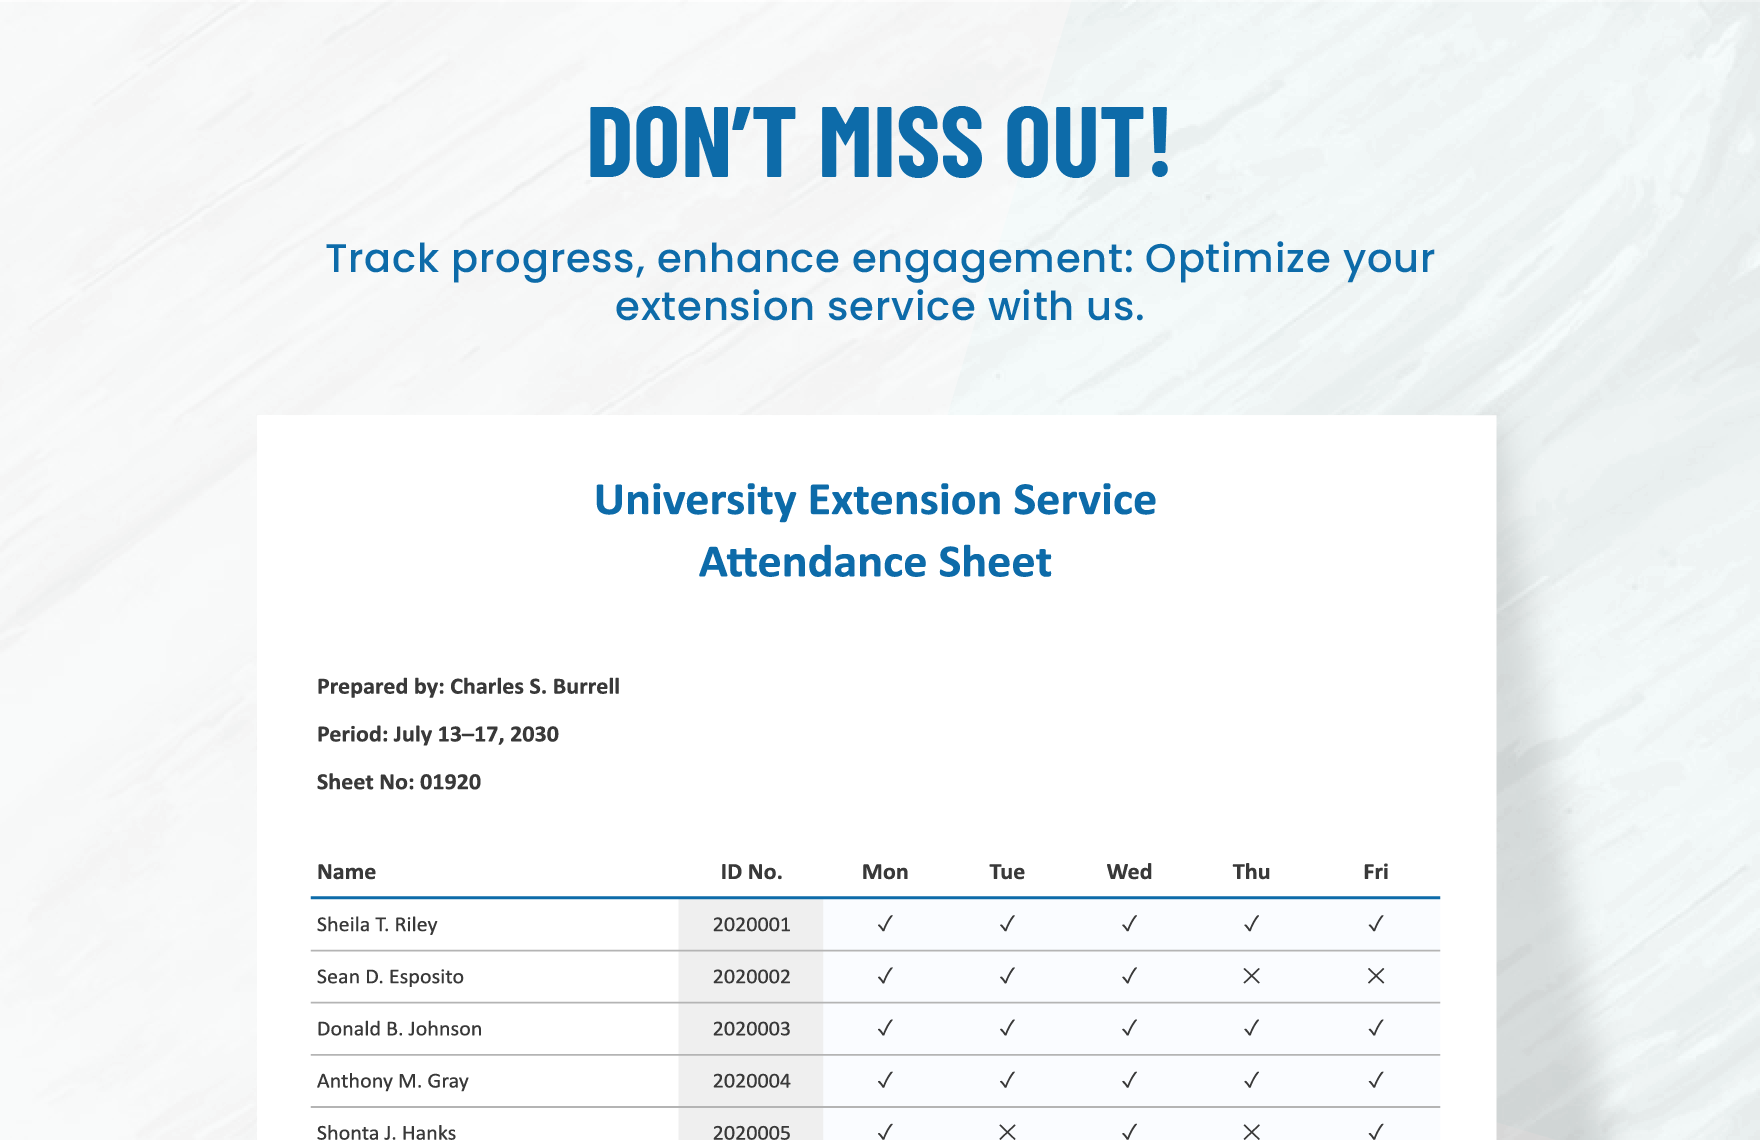 University Extension Service Attendance Sheet Template